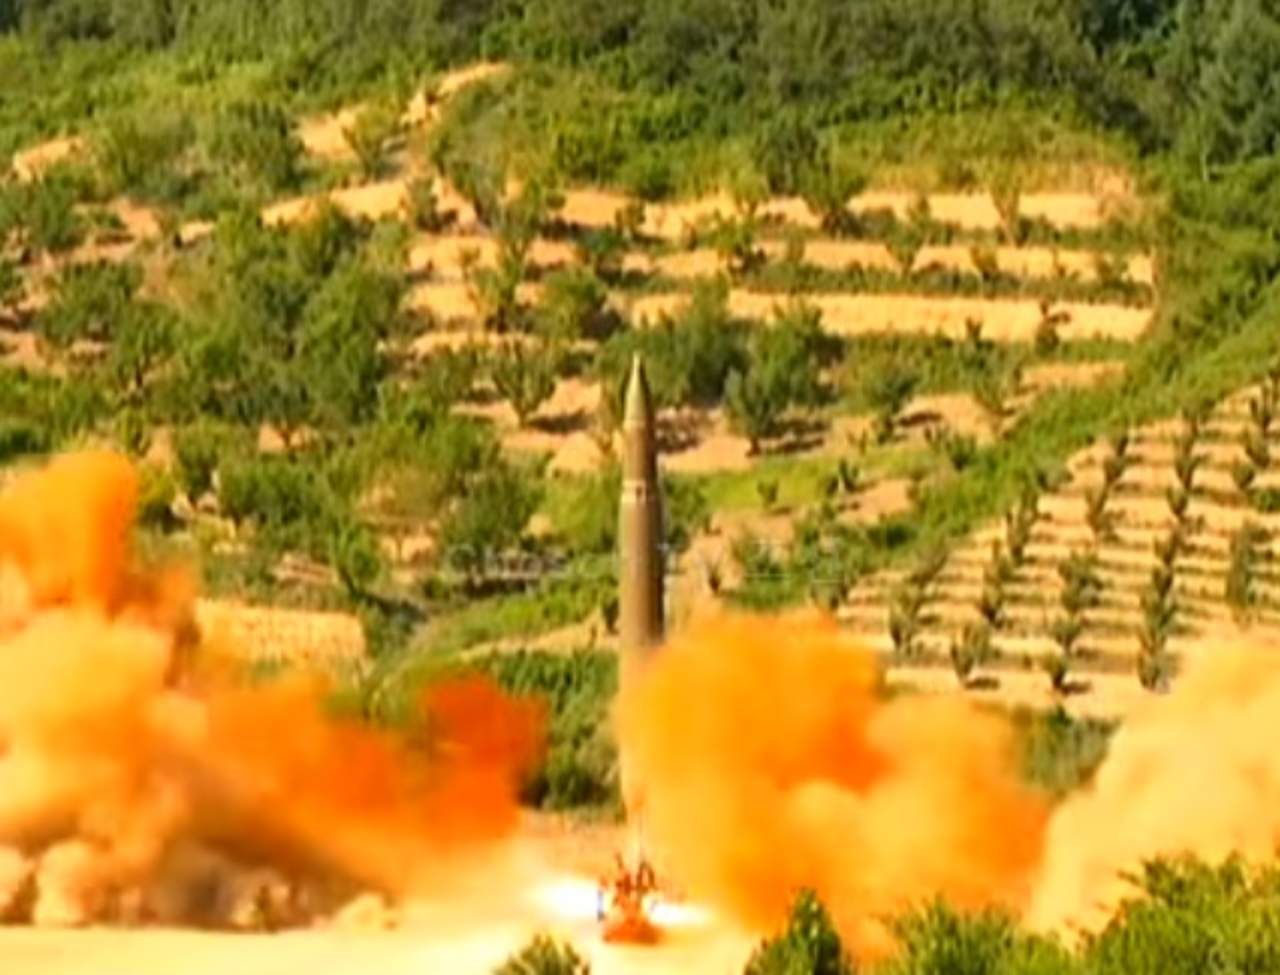 Corea del Norte, a través de la agencia de noticias estatal KCNA aseguró que el lanzamiento fue un éxito y detalló que el misil alcanzó una altitud de 2,800 kilómetros y viajó cerca de 1,000 kilómetros antes de impactar en aguas de Mar de Japón (Mar del Este). (ESPECIAL)